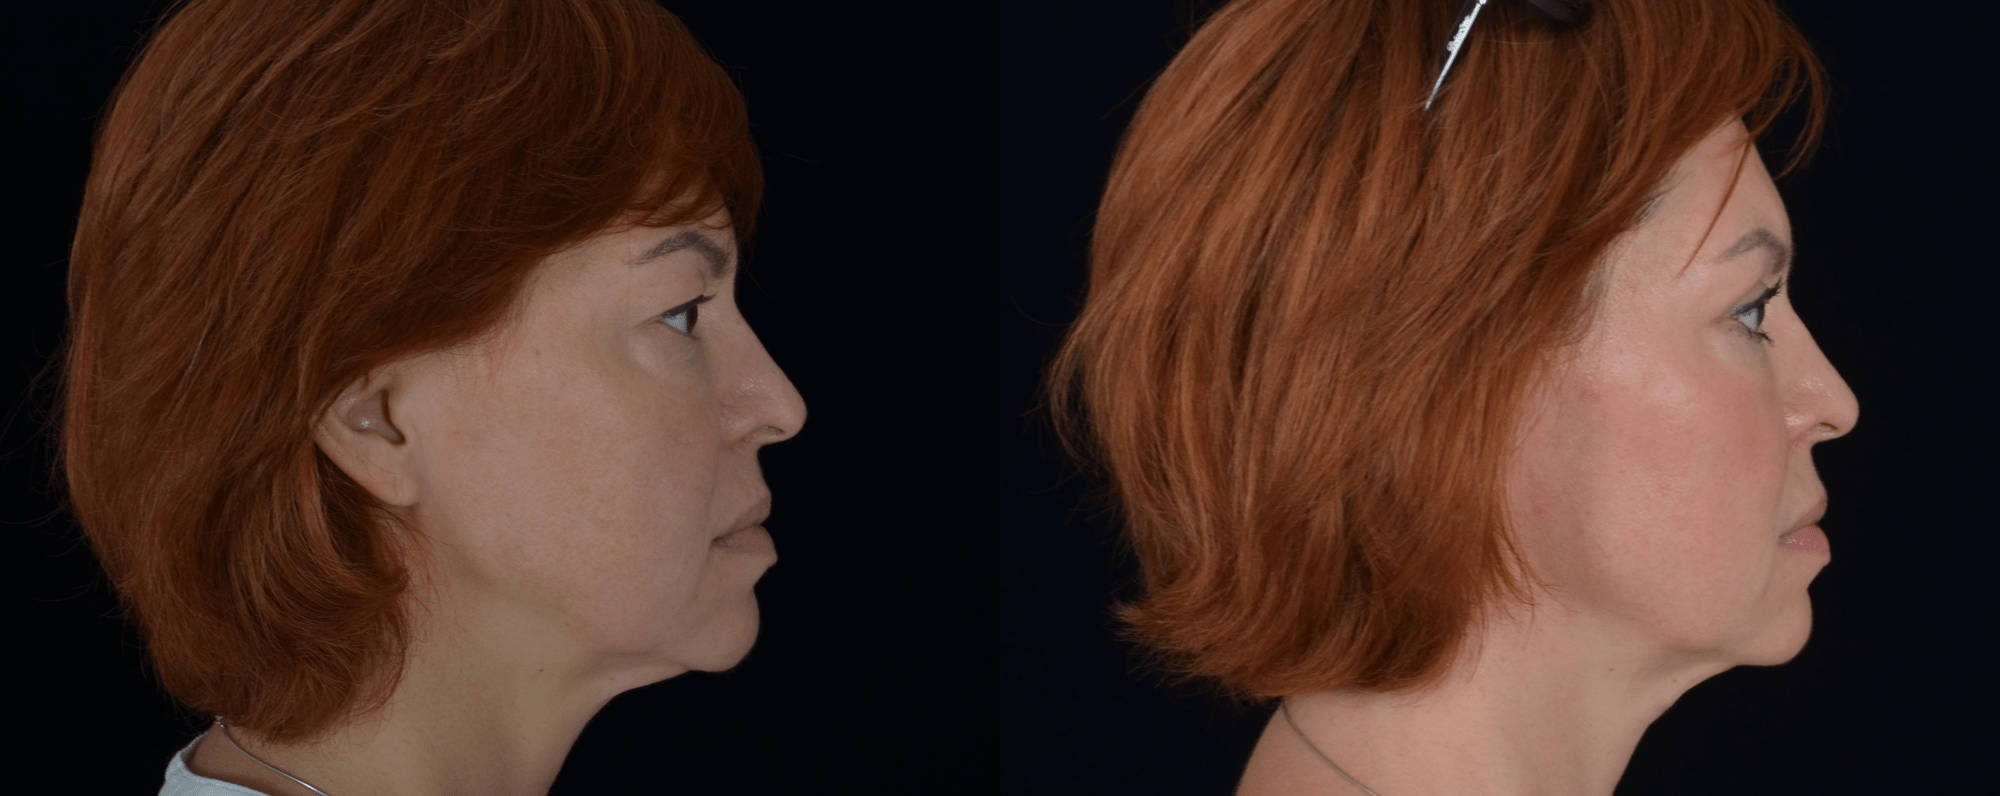 Липофилинг лица и пластика верхних век, фото до и после